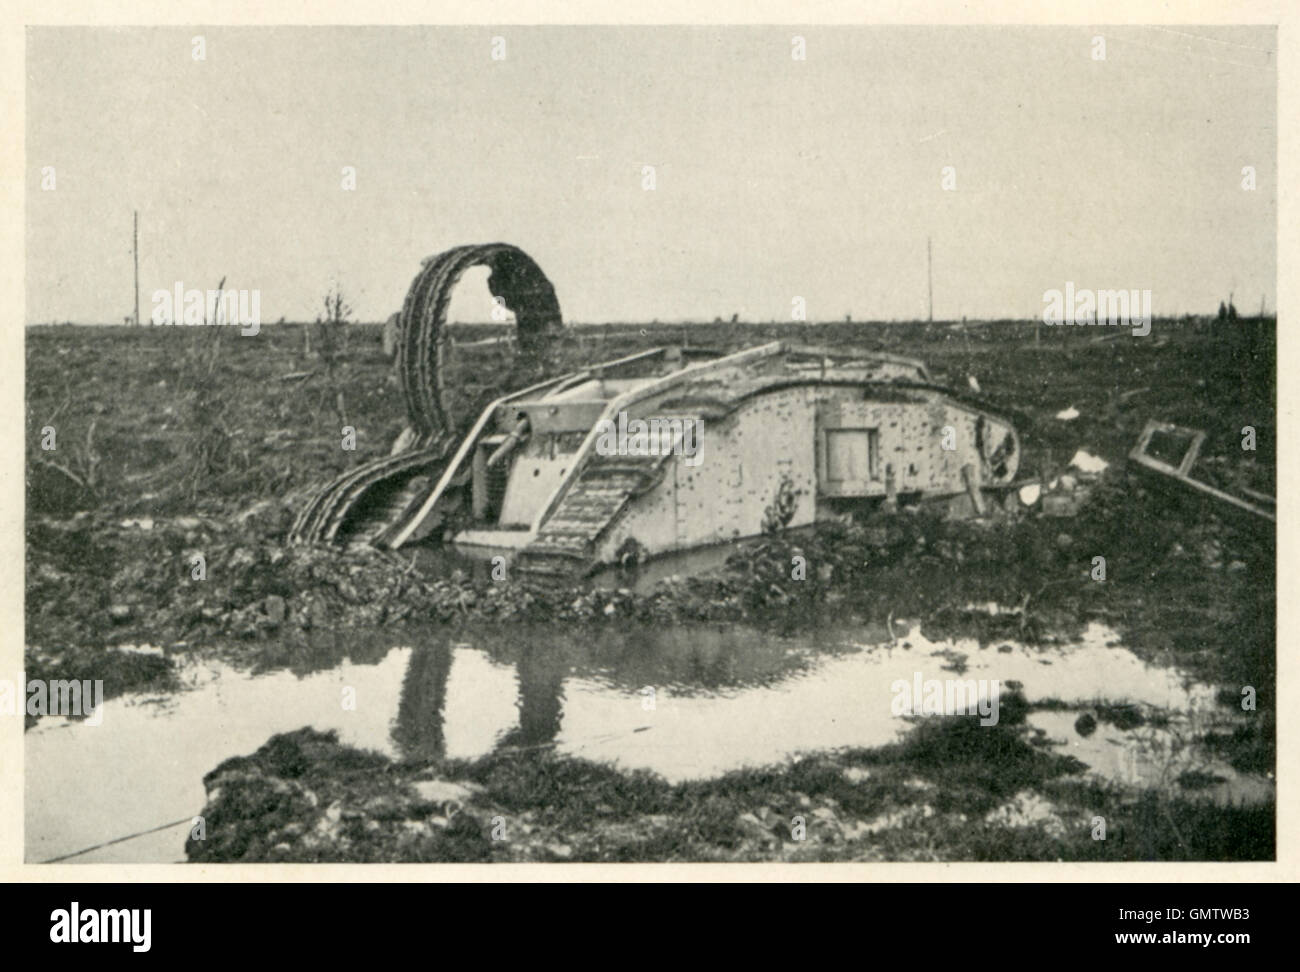 Réservoir en Flandre La Boue, 1917 bataille de la photographie d'un réservoir à moitié submergée et embourbé dans de l'eau avec une piste soufflée Banque D'Images